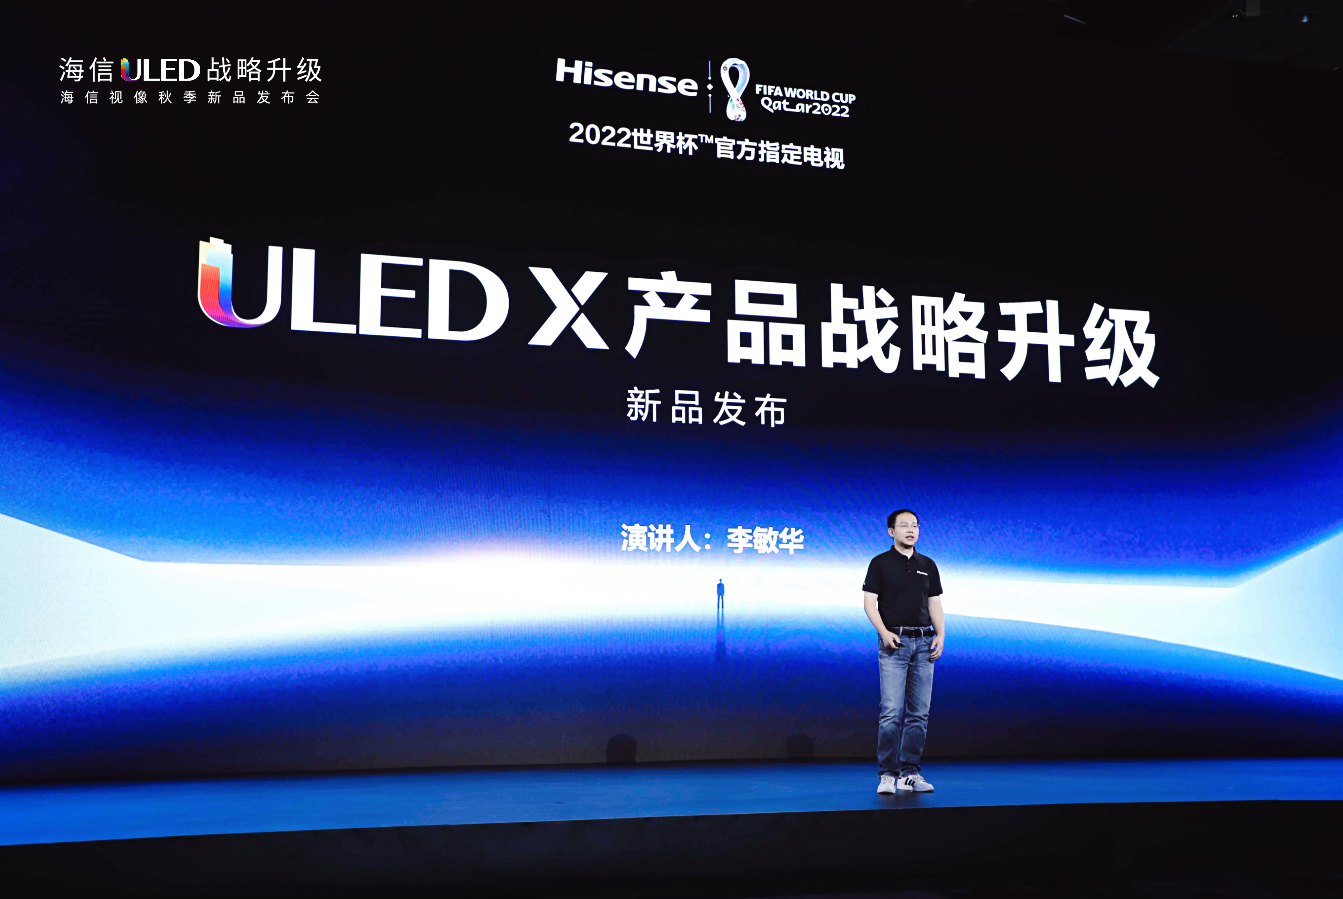 9月20日晚，海信正式发布了全新一代显示技术平台ULED X，并推出了基于该技术平台的U8H、UX等重磅新品，让好的画质真正融入环境，忠于场景。